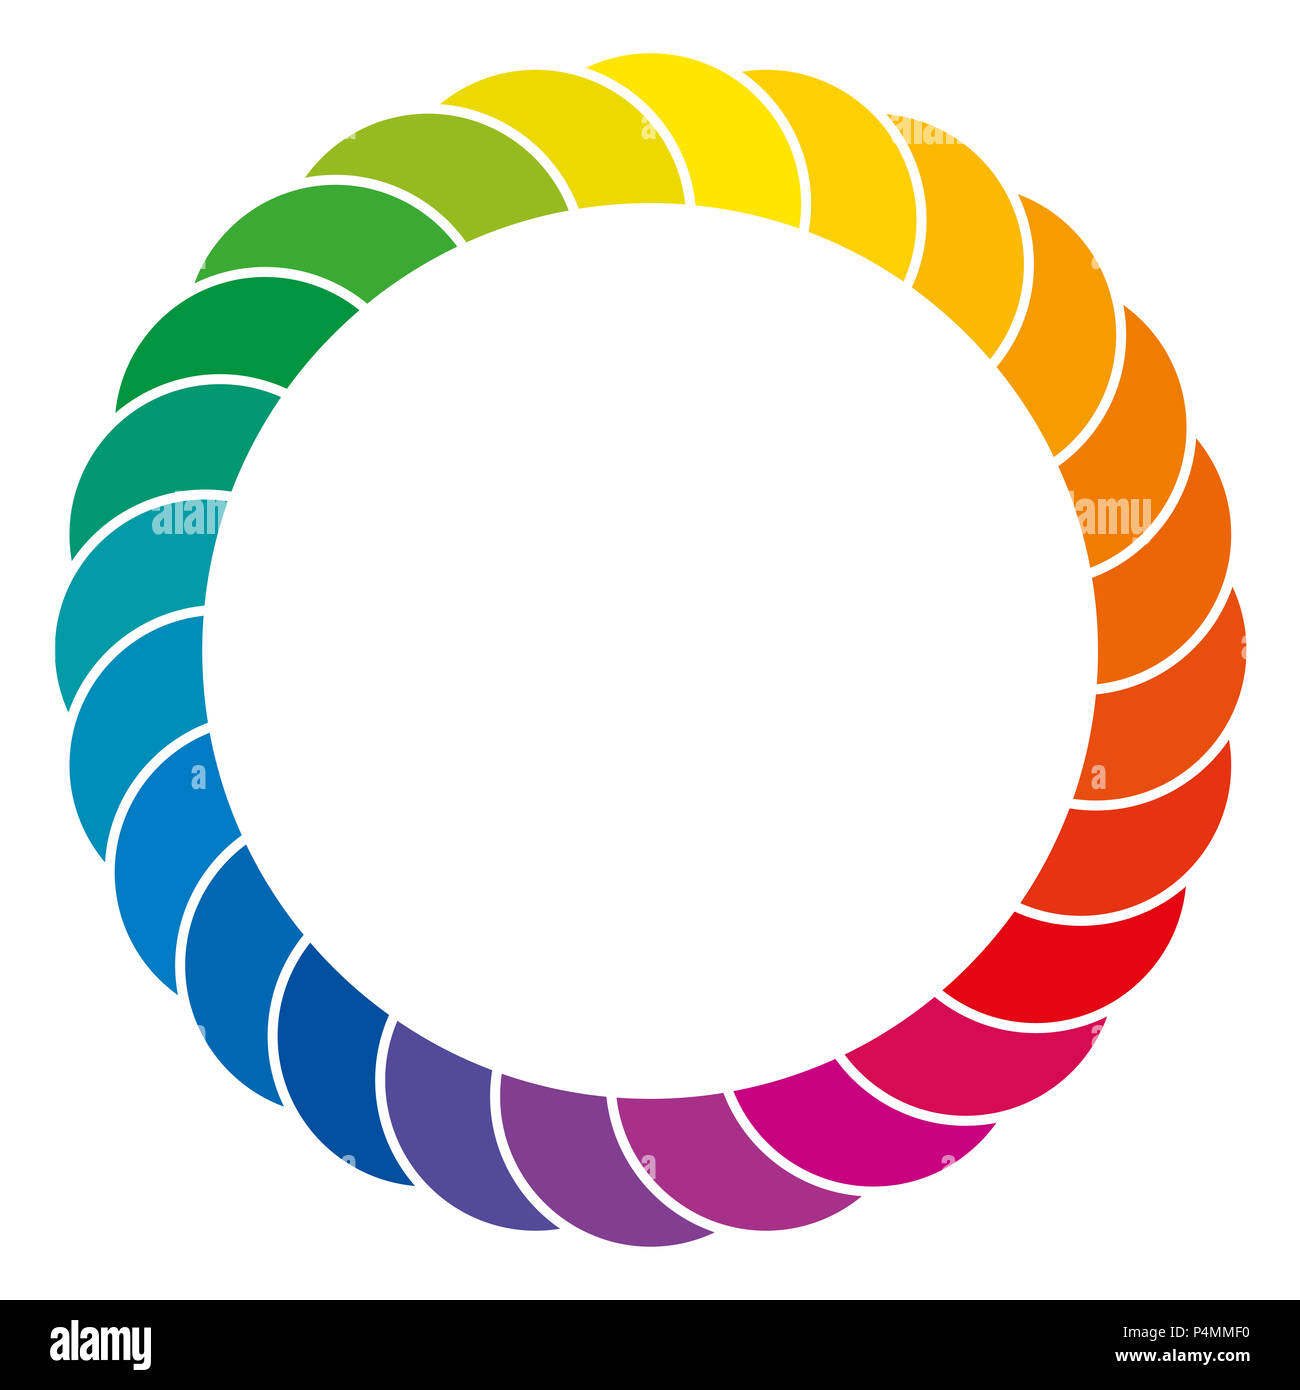 Rainbow sfondo colorato. Spazio colorato e cerchio di segmenti di sovrapposizione dello spettro cromatico, separate tramite linee bianche. Isolato. Foto Stock